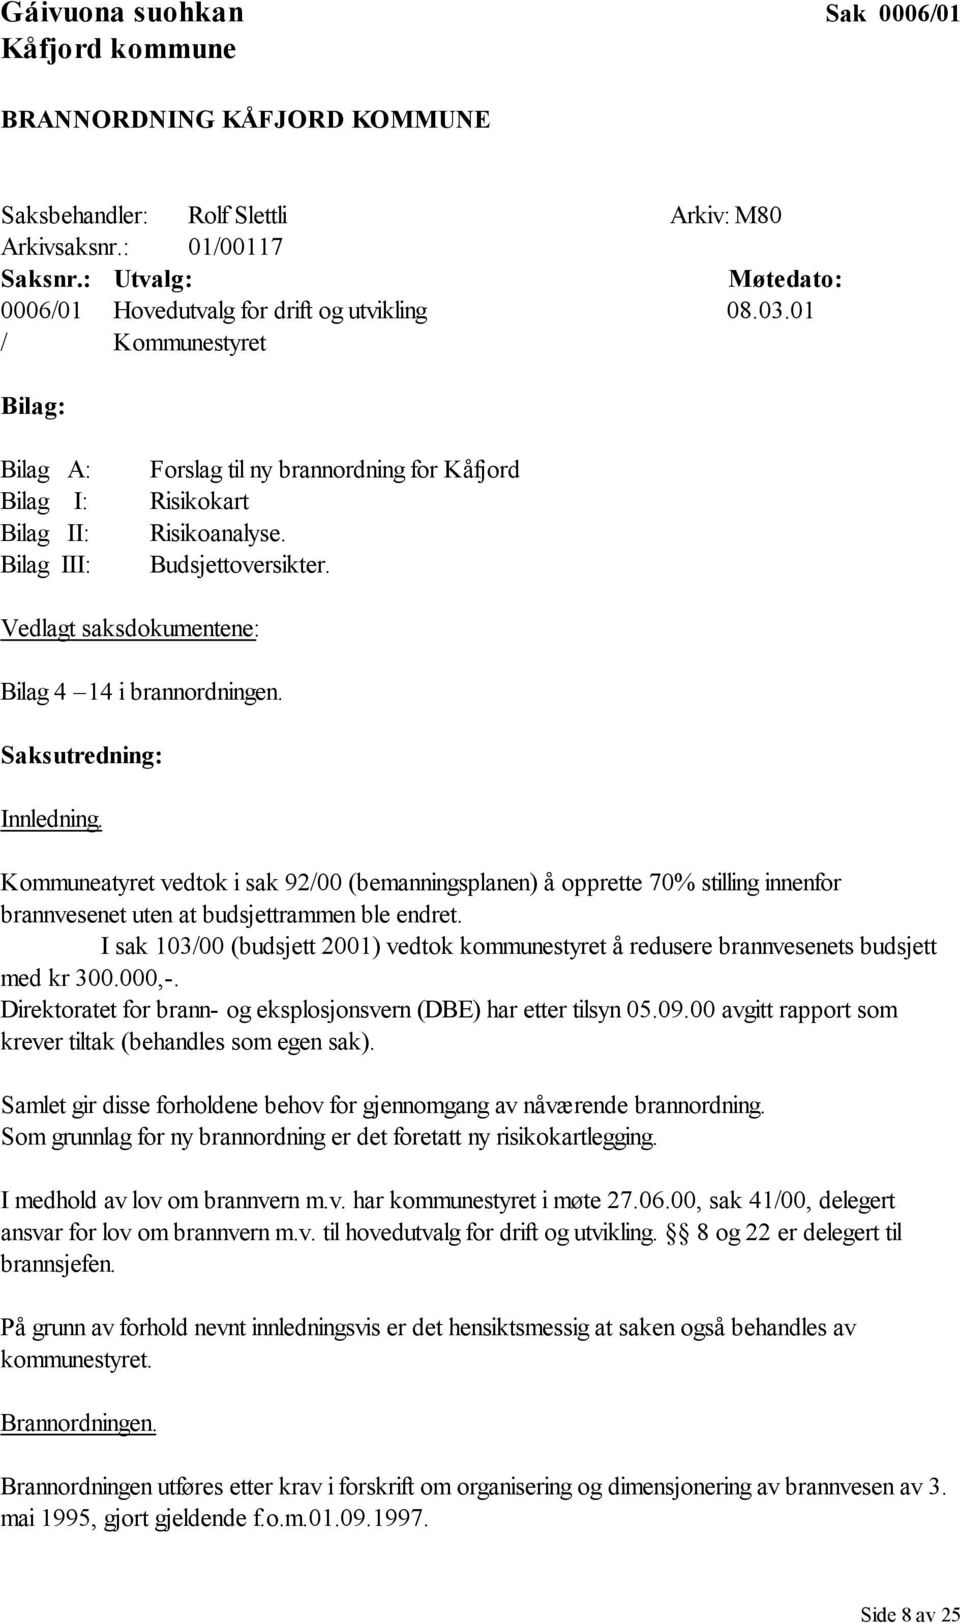 Bilag III: Budsjettoversikter. Vedlagt saksdokumentene: Bilag 4 14 i brannordningen. Saksutredning: Innledning.